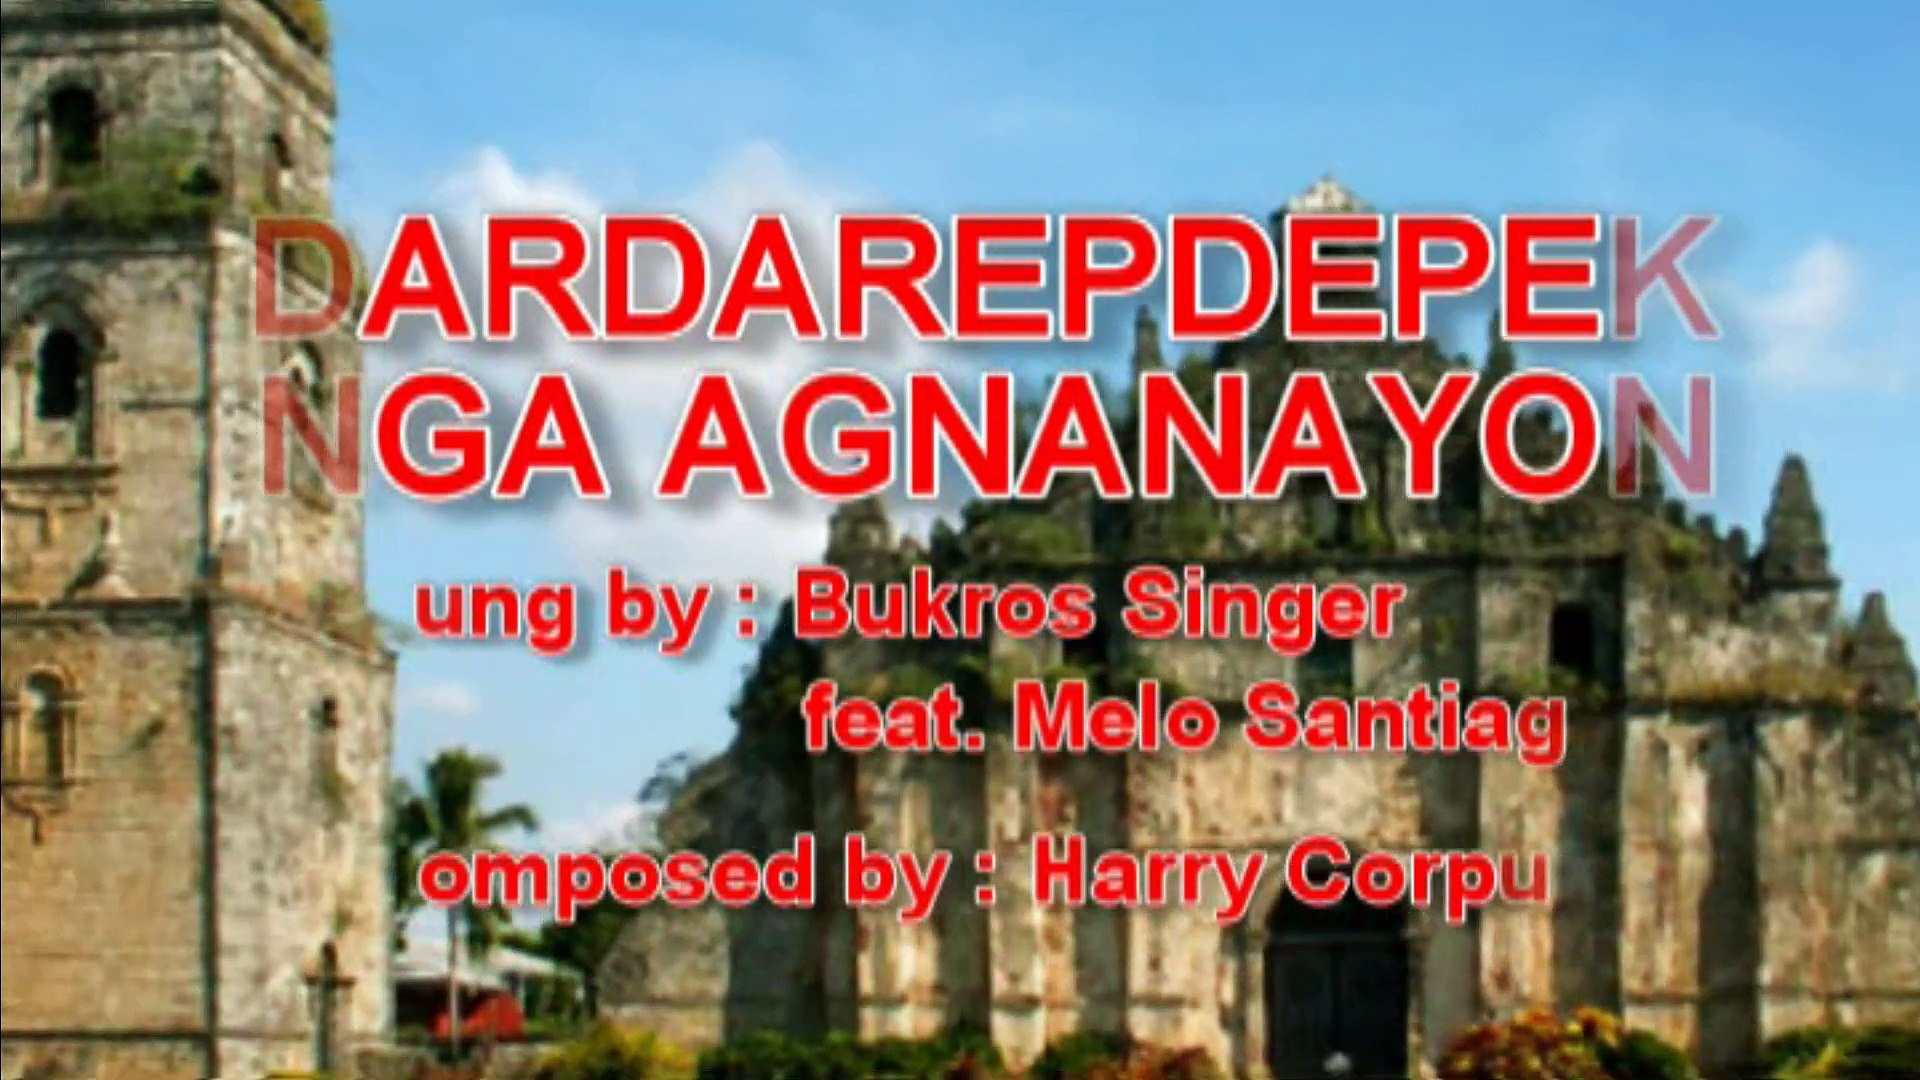 Bukros Singers - Dardarepdepek Nga Agnanayon (Lyrics Video)